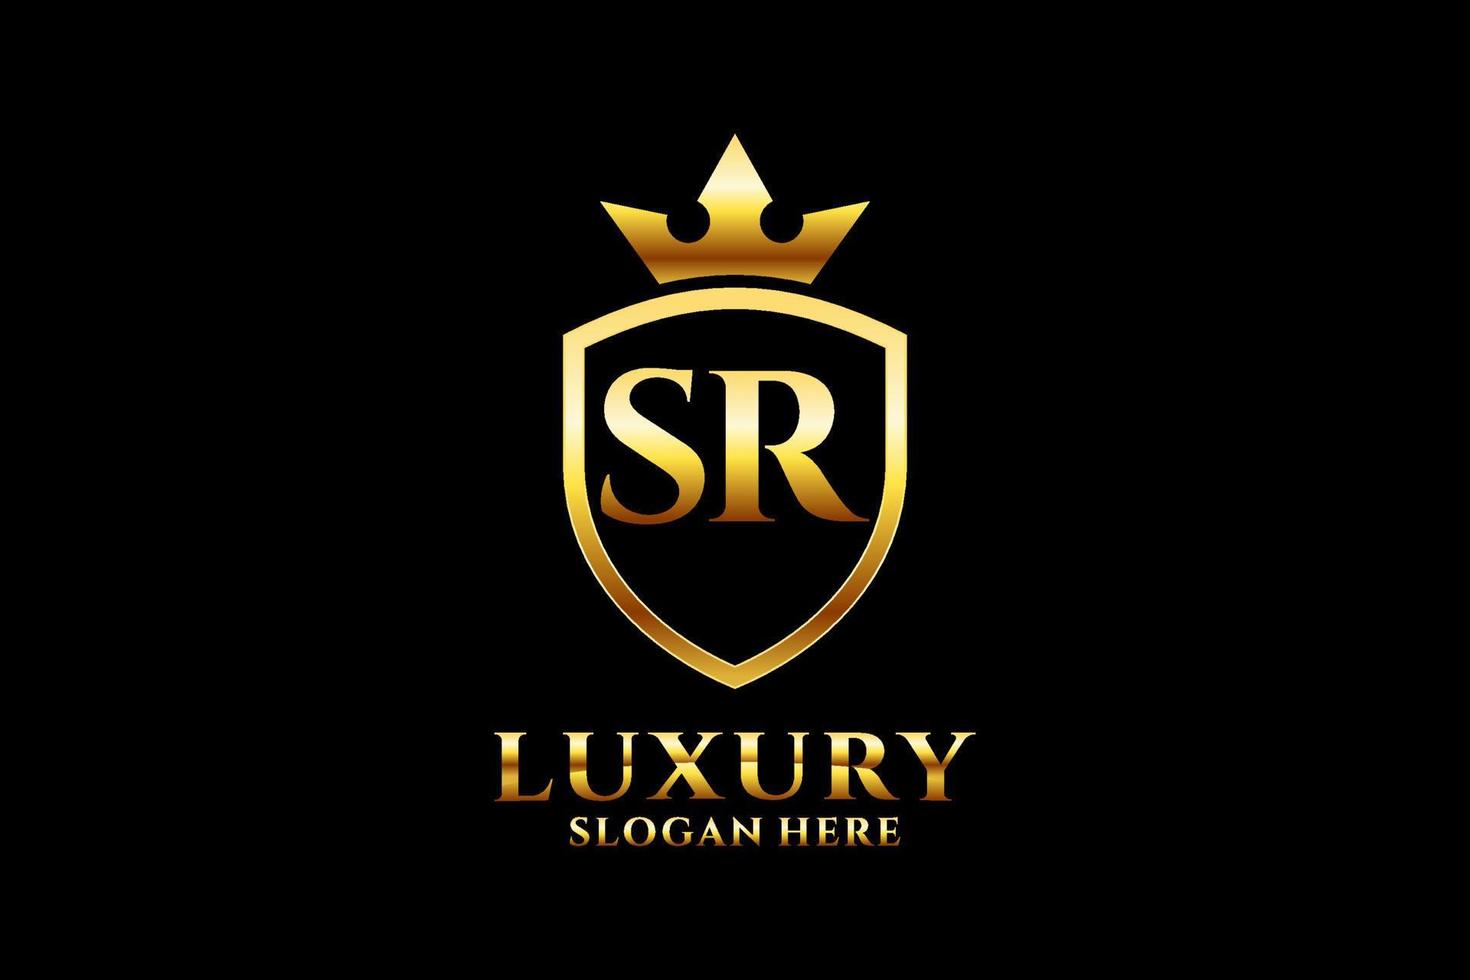 logo monogramme de luxe élégant initial sr ou modèle de badge avec volutes et couronne royale - parfait pour les projets de marque de luxe vecteur